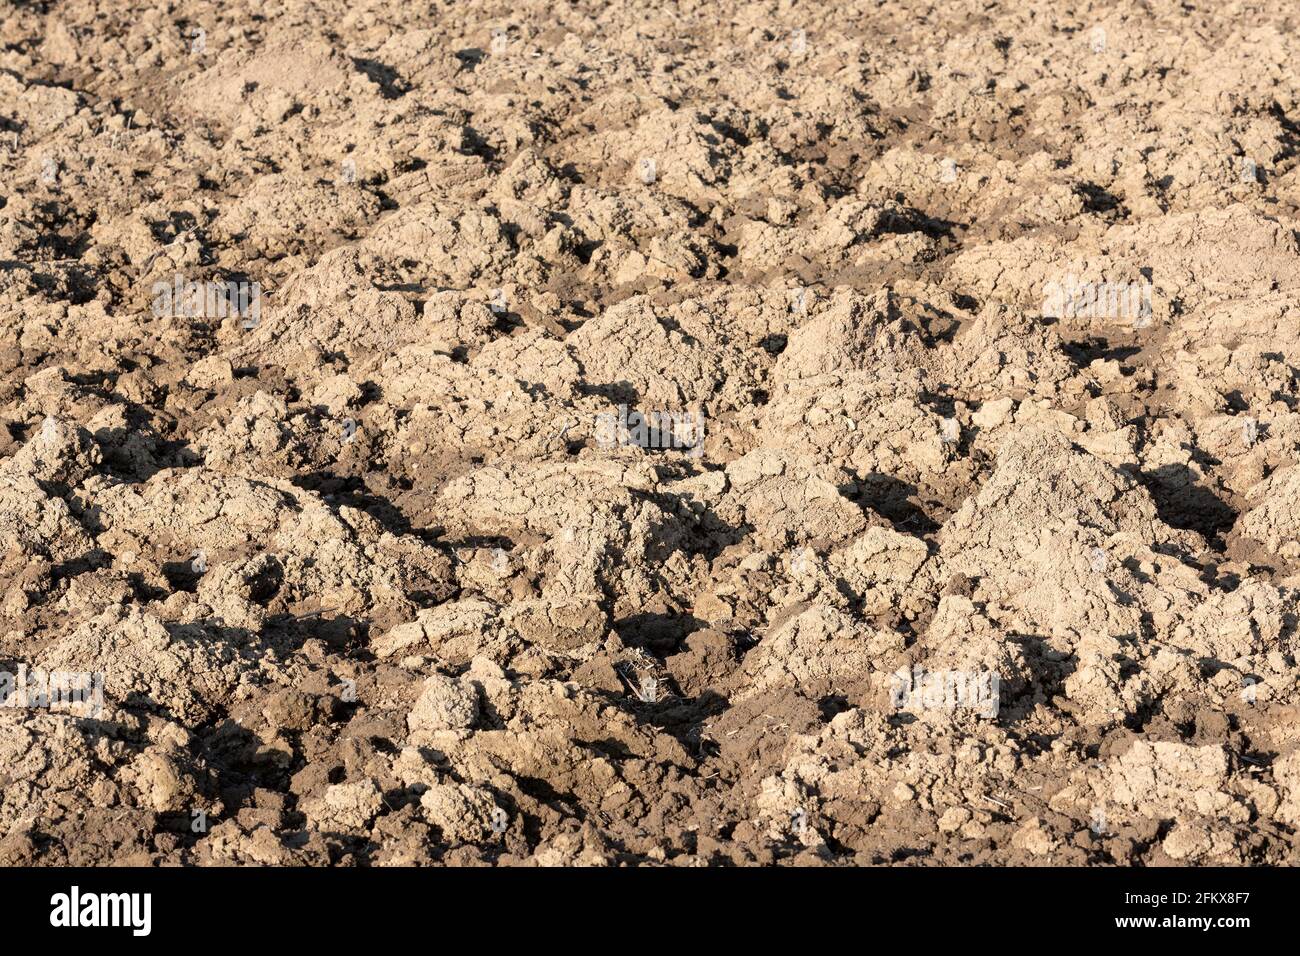 Plowed Field, Soil Stock Photo